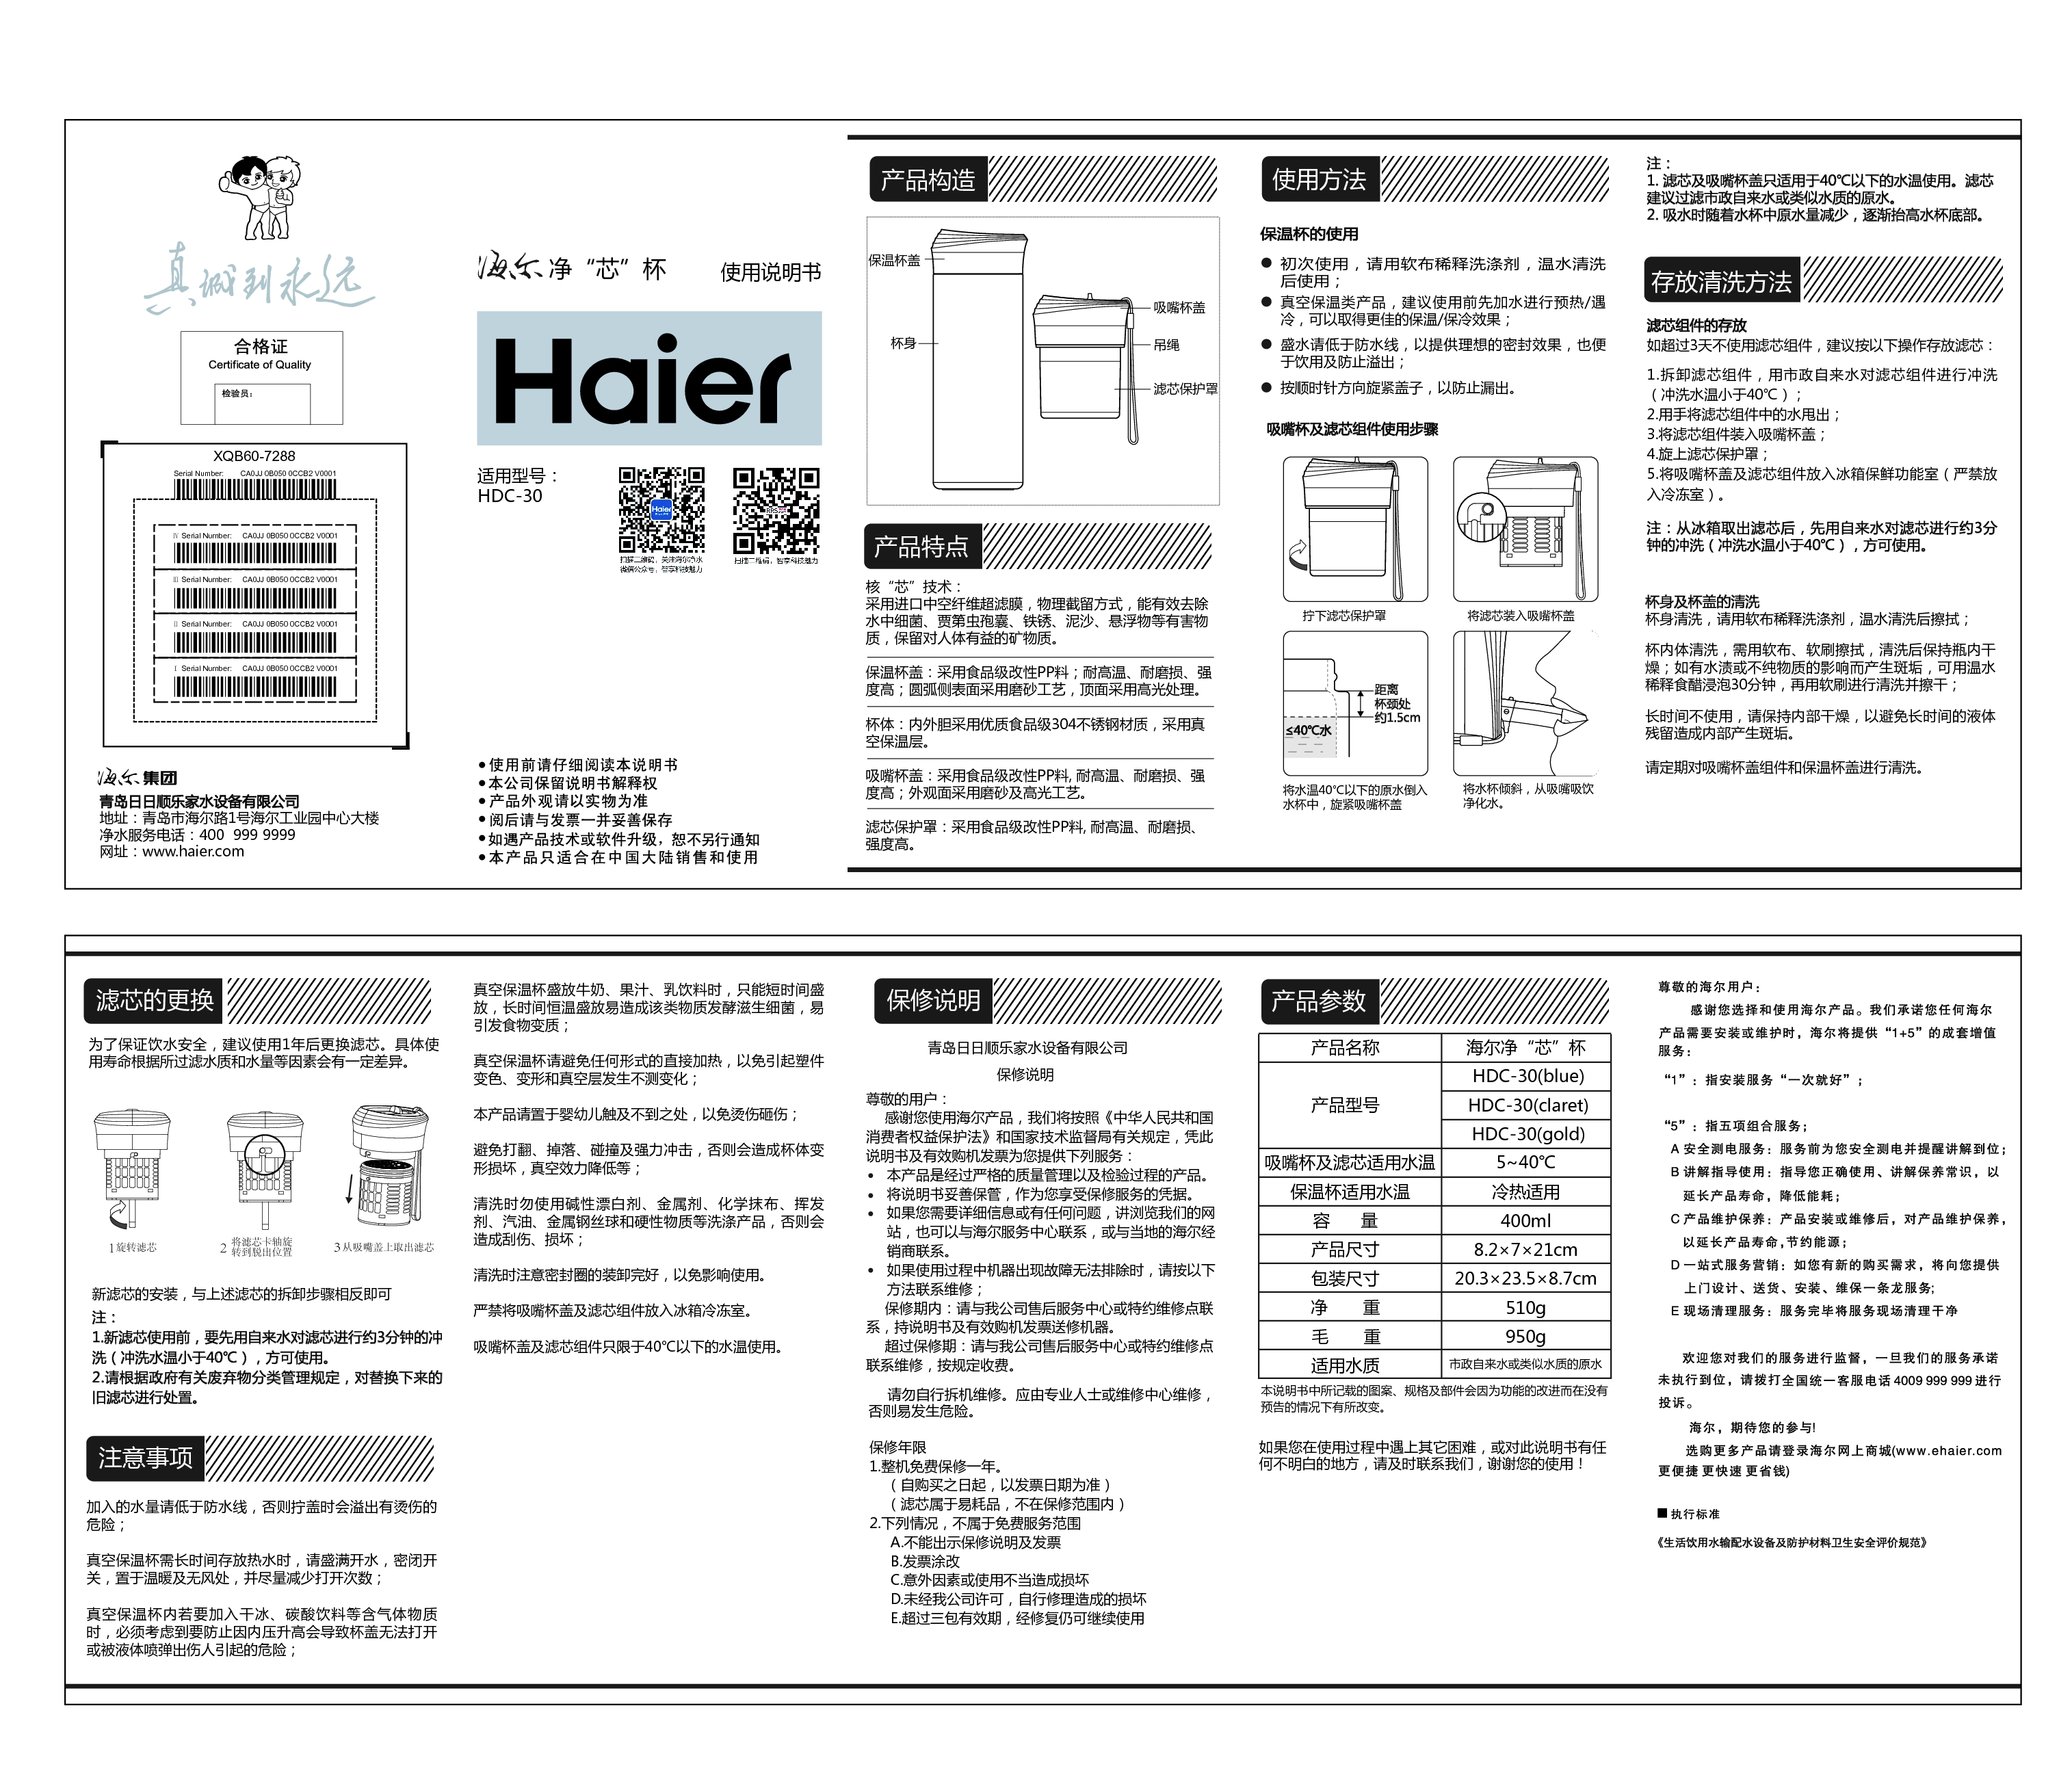 海尔 Haier HDC-30 使用说明书 封面